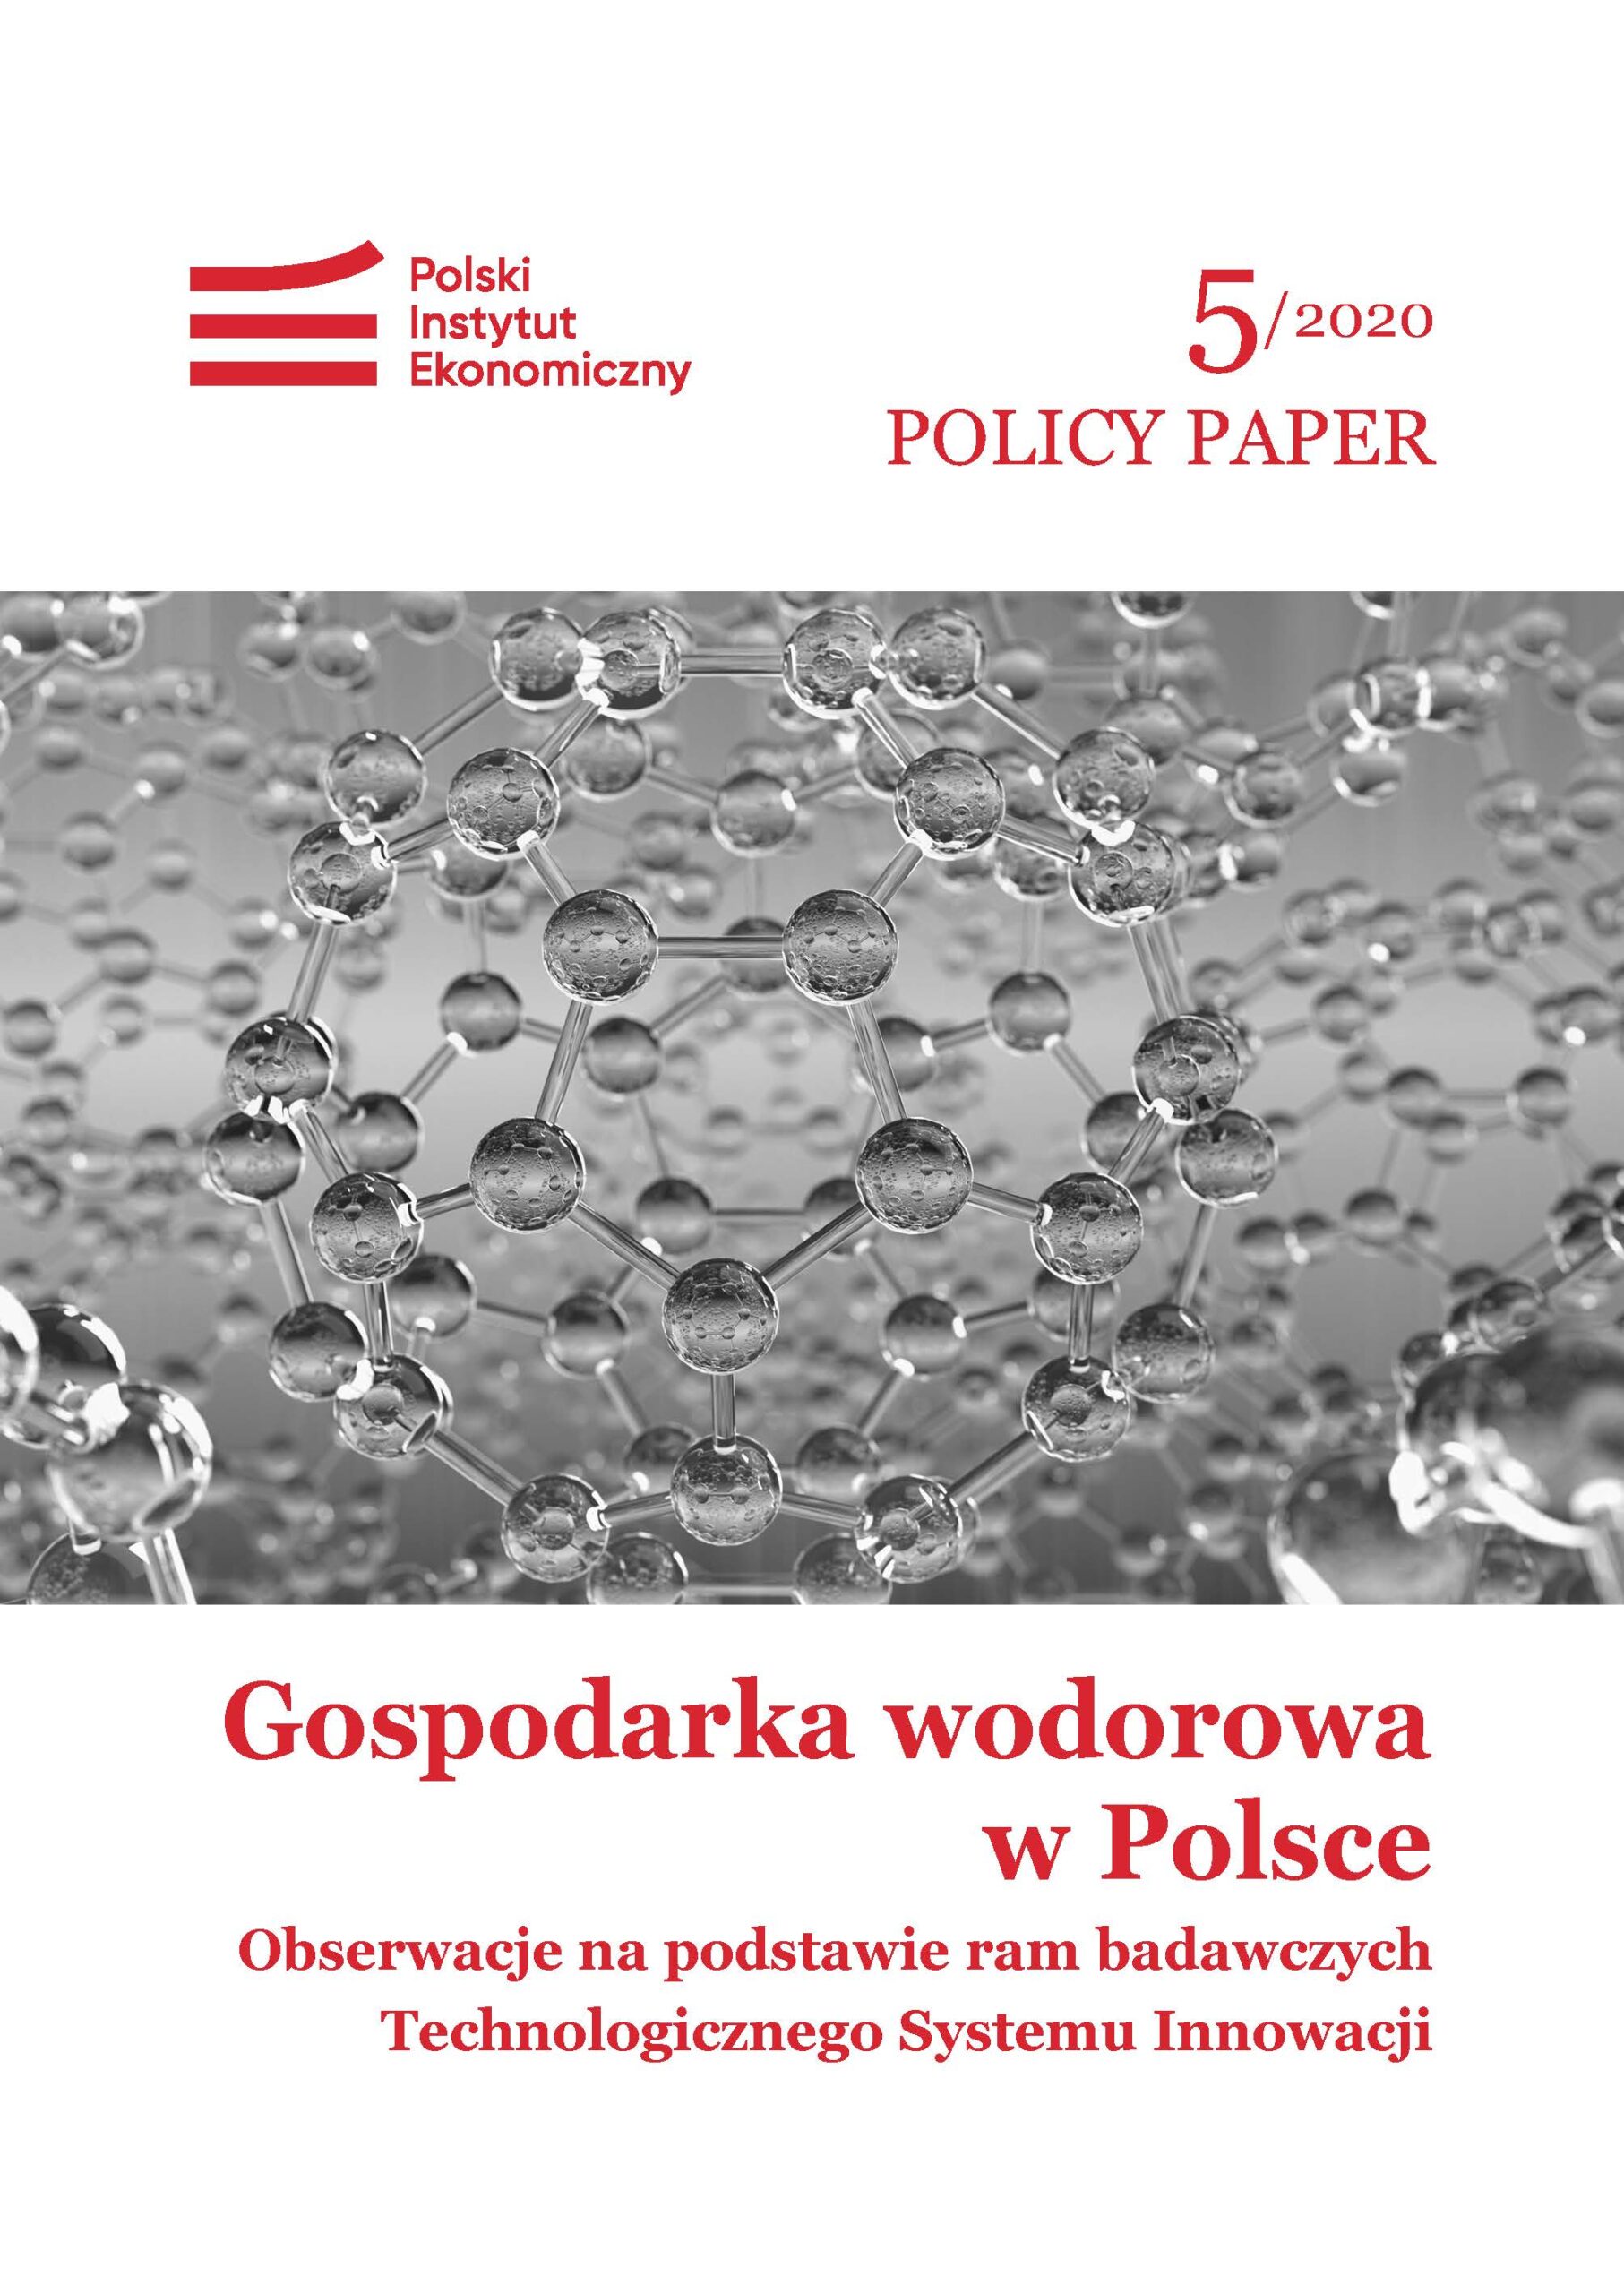 Brak przepisów i zbyt mały nakład środków na B+R blokują rozwój gospodarki wodorowej w Polsce